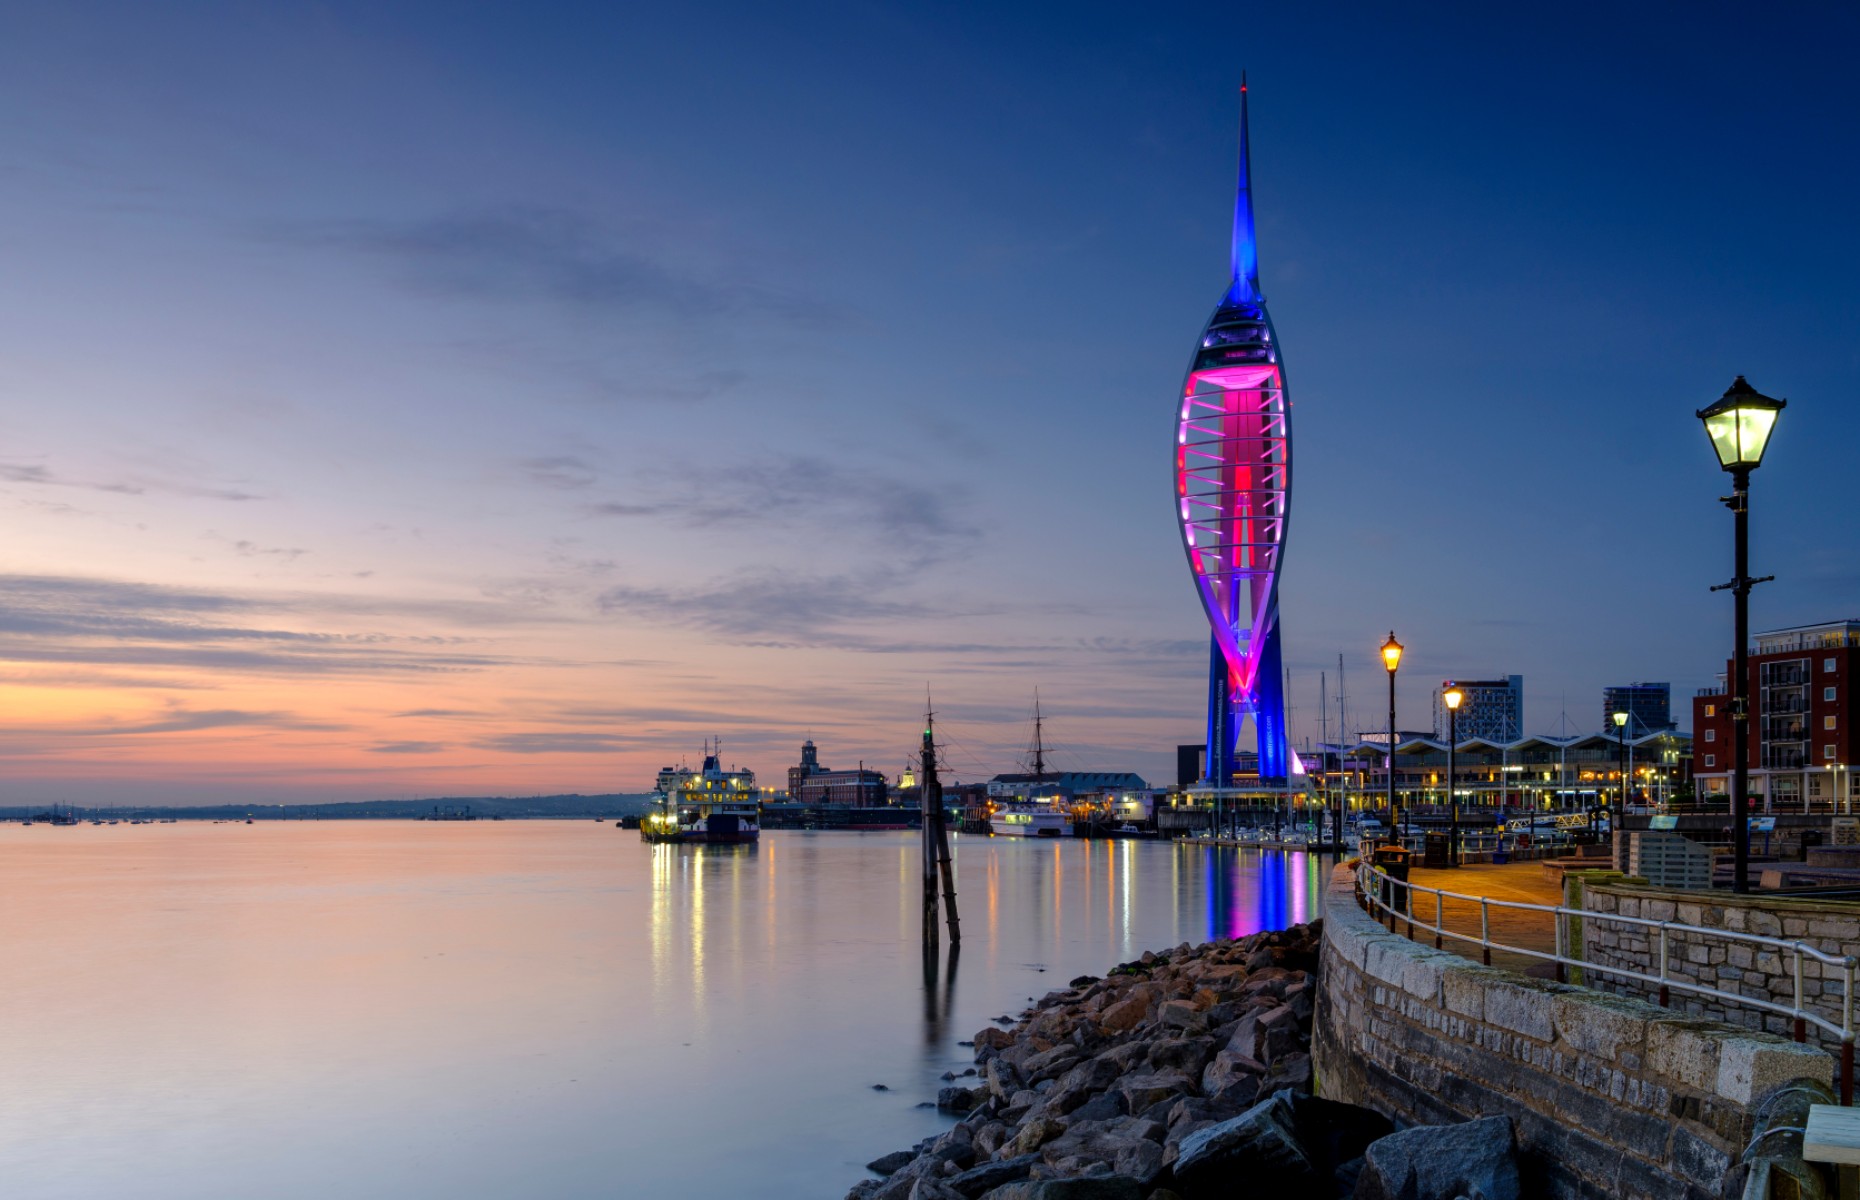 Spinnaker Tower in Portsmouth (Image: Julian Gazzard/Shutterstock)